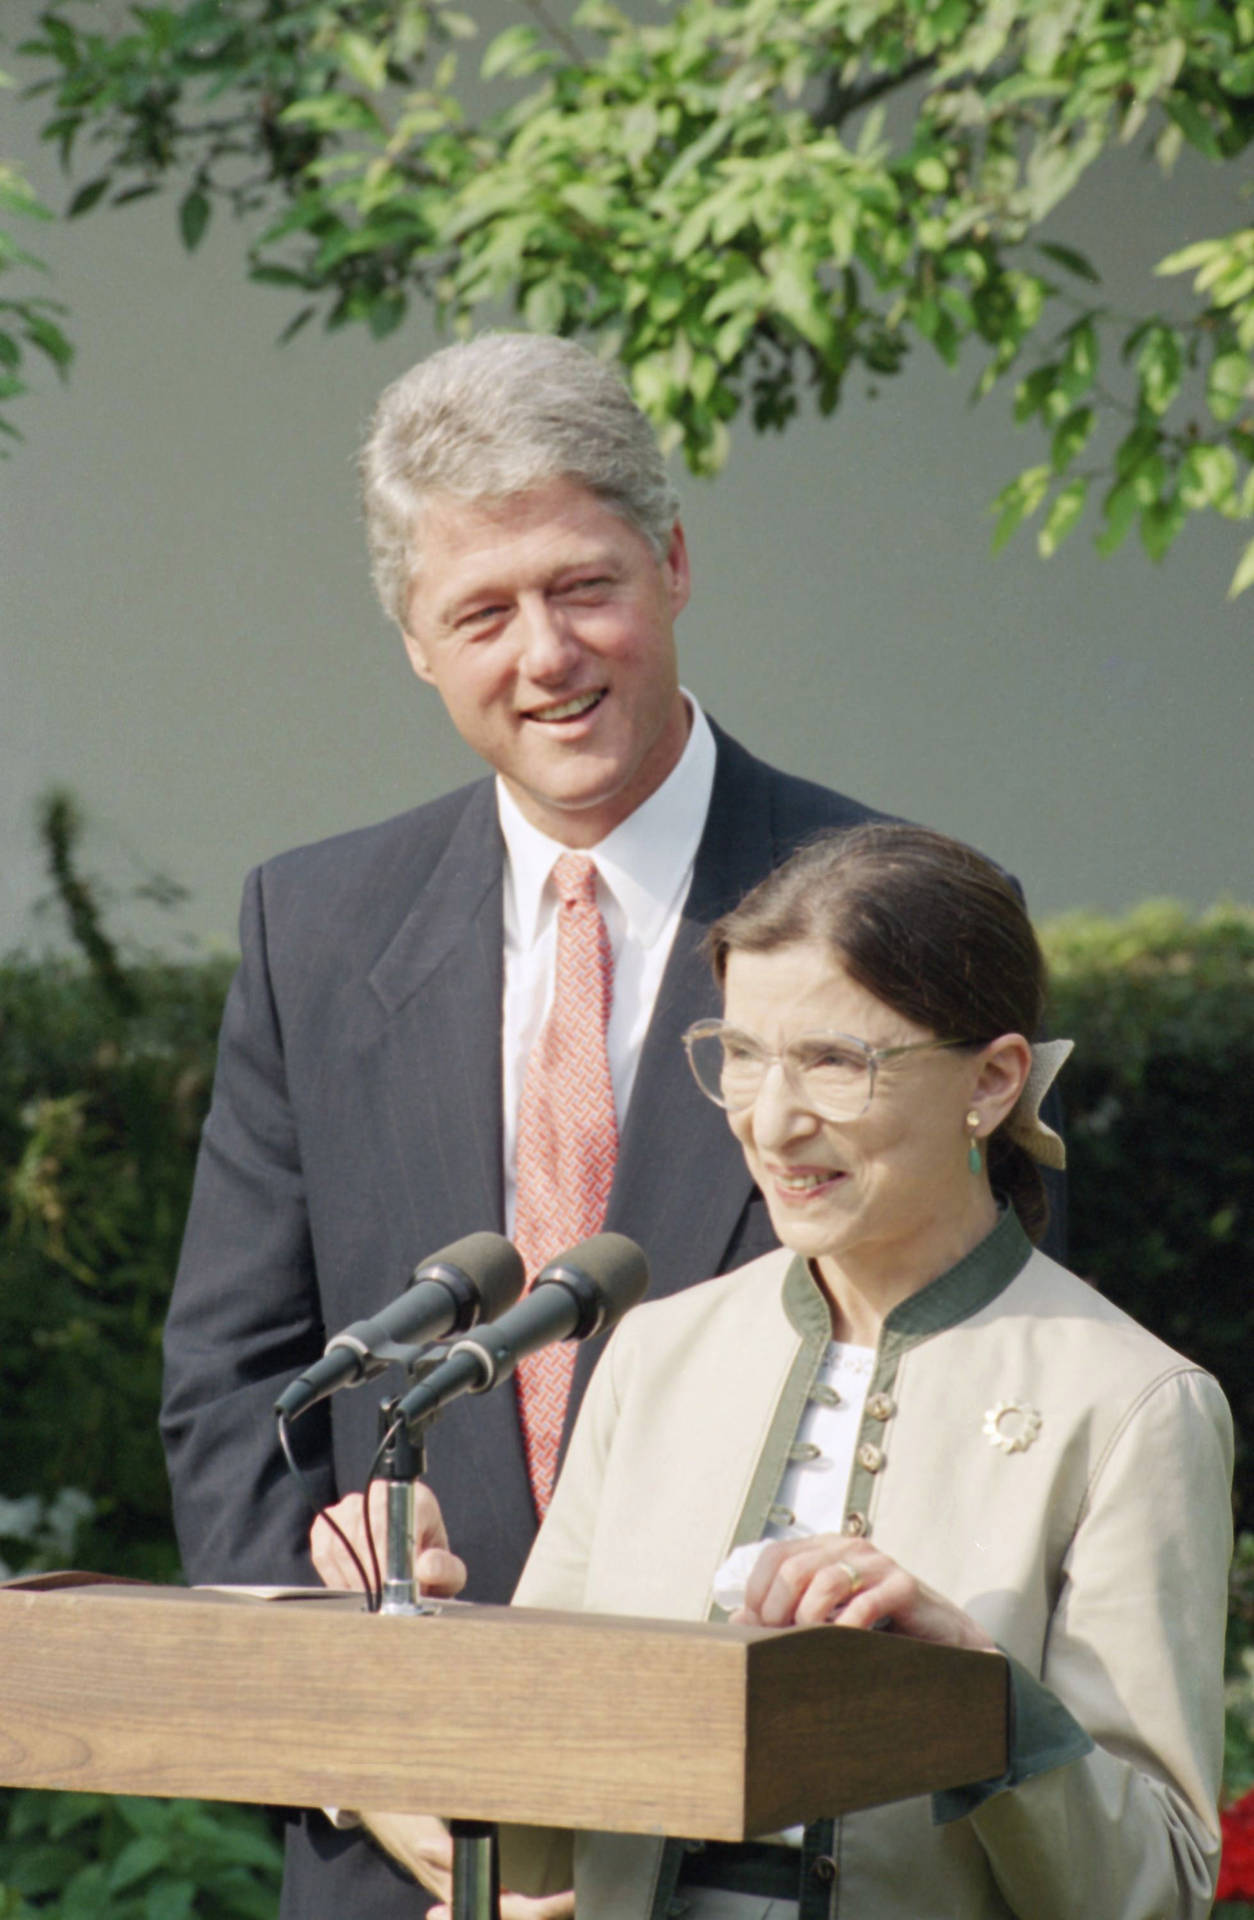 Ruth Bader Ginsburg And Bill Clinton